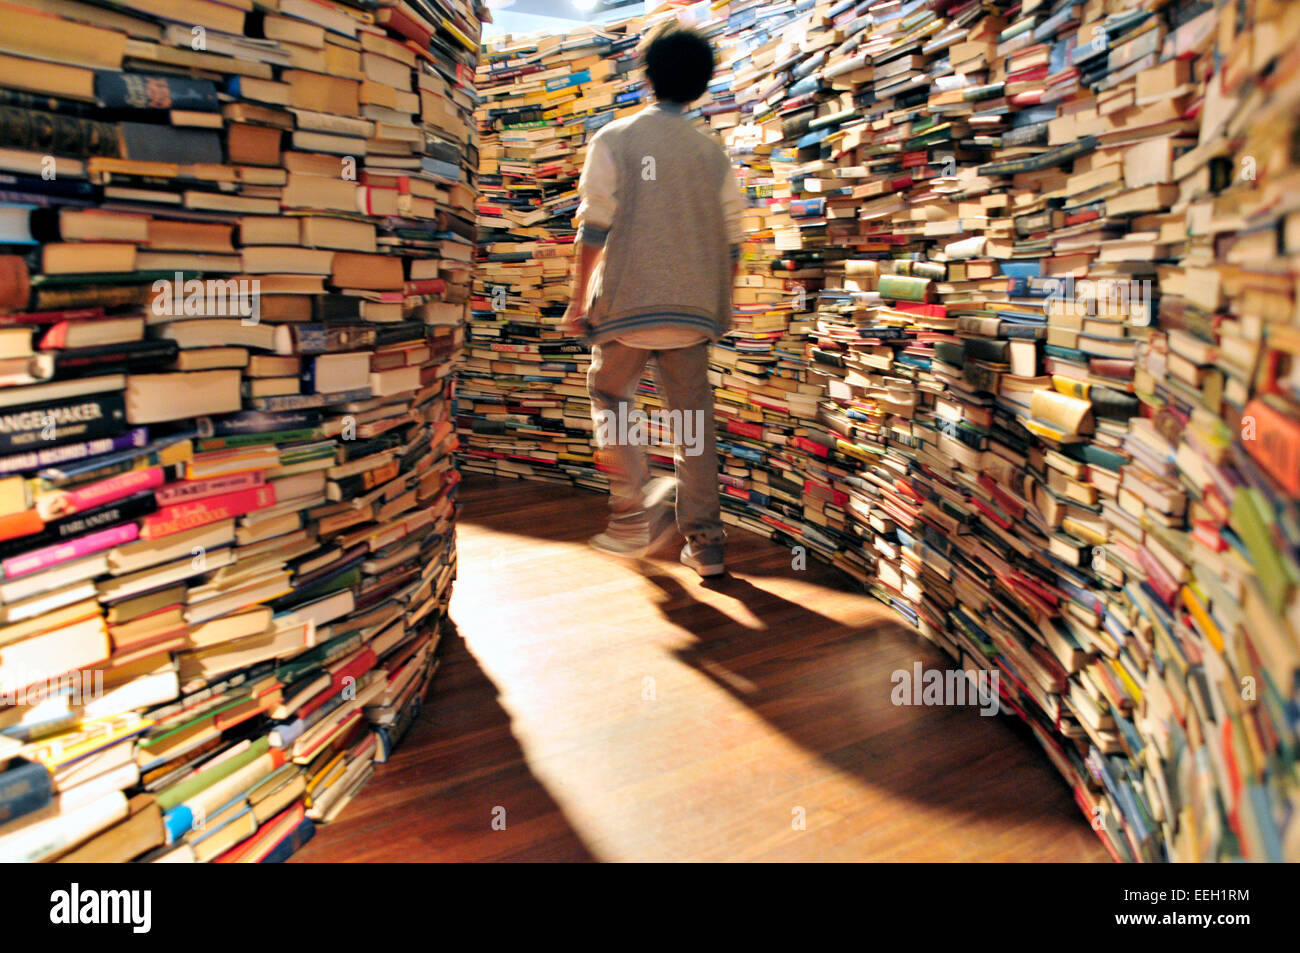 Un jeune garçon marche entre des piles de livres, une installation artistique appelé 'un labyrinthe me', Royal Festival Hall, London, UK Banque D'Images